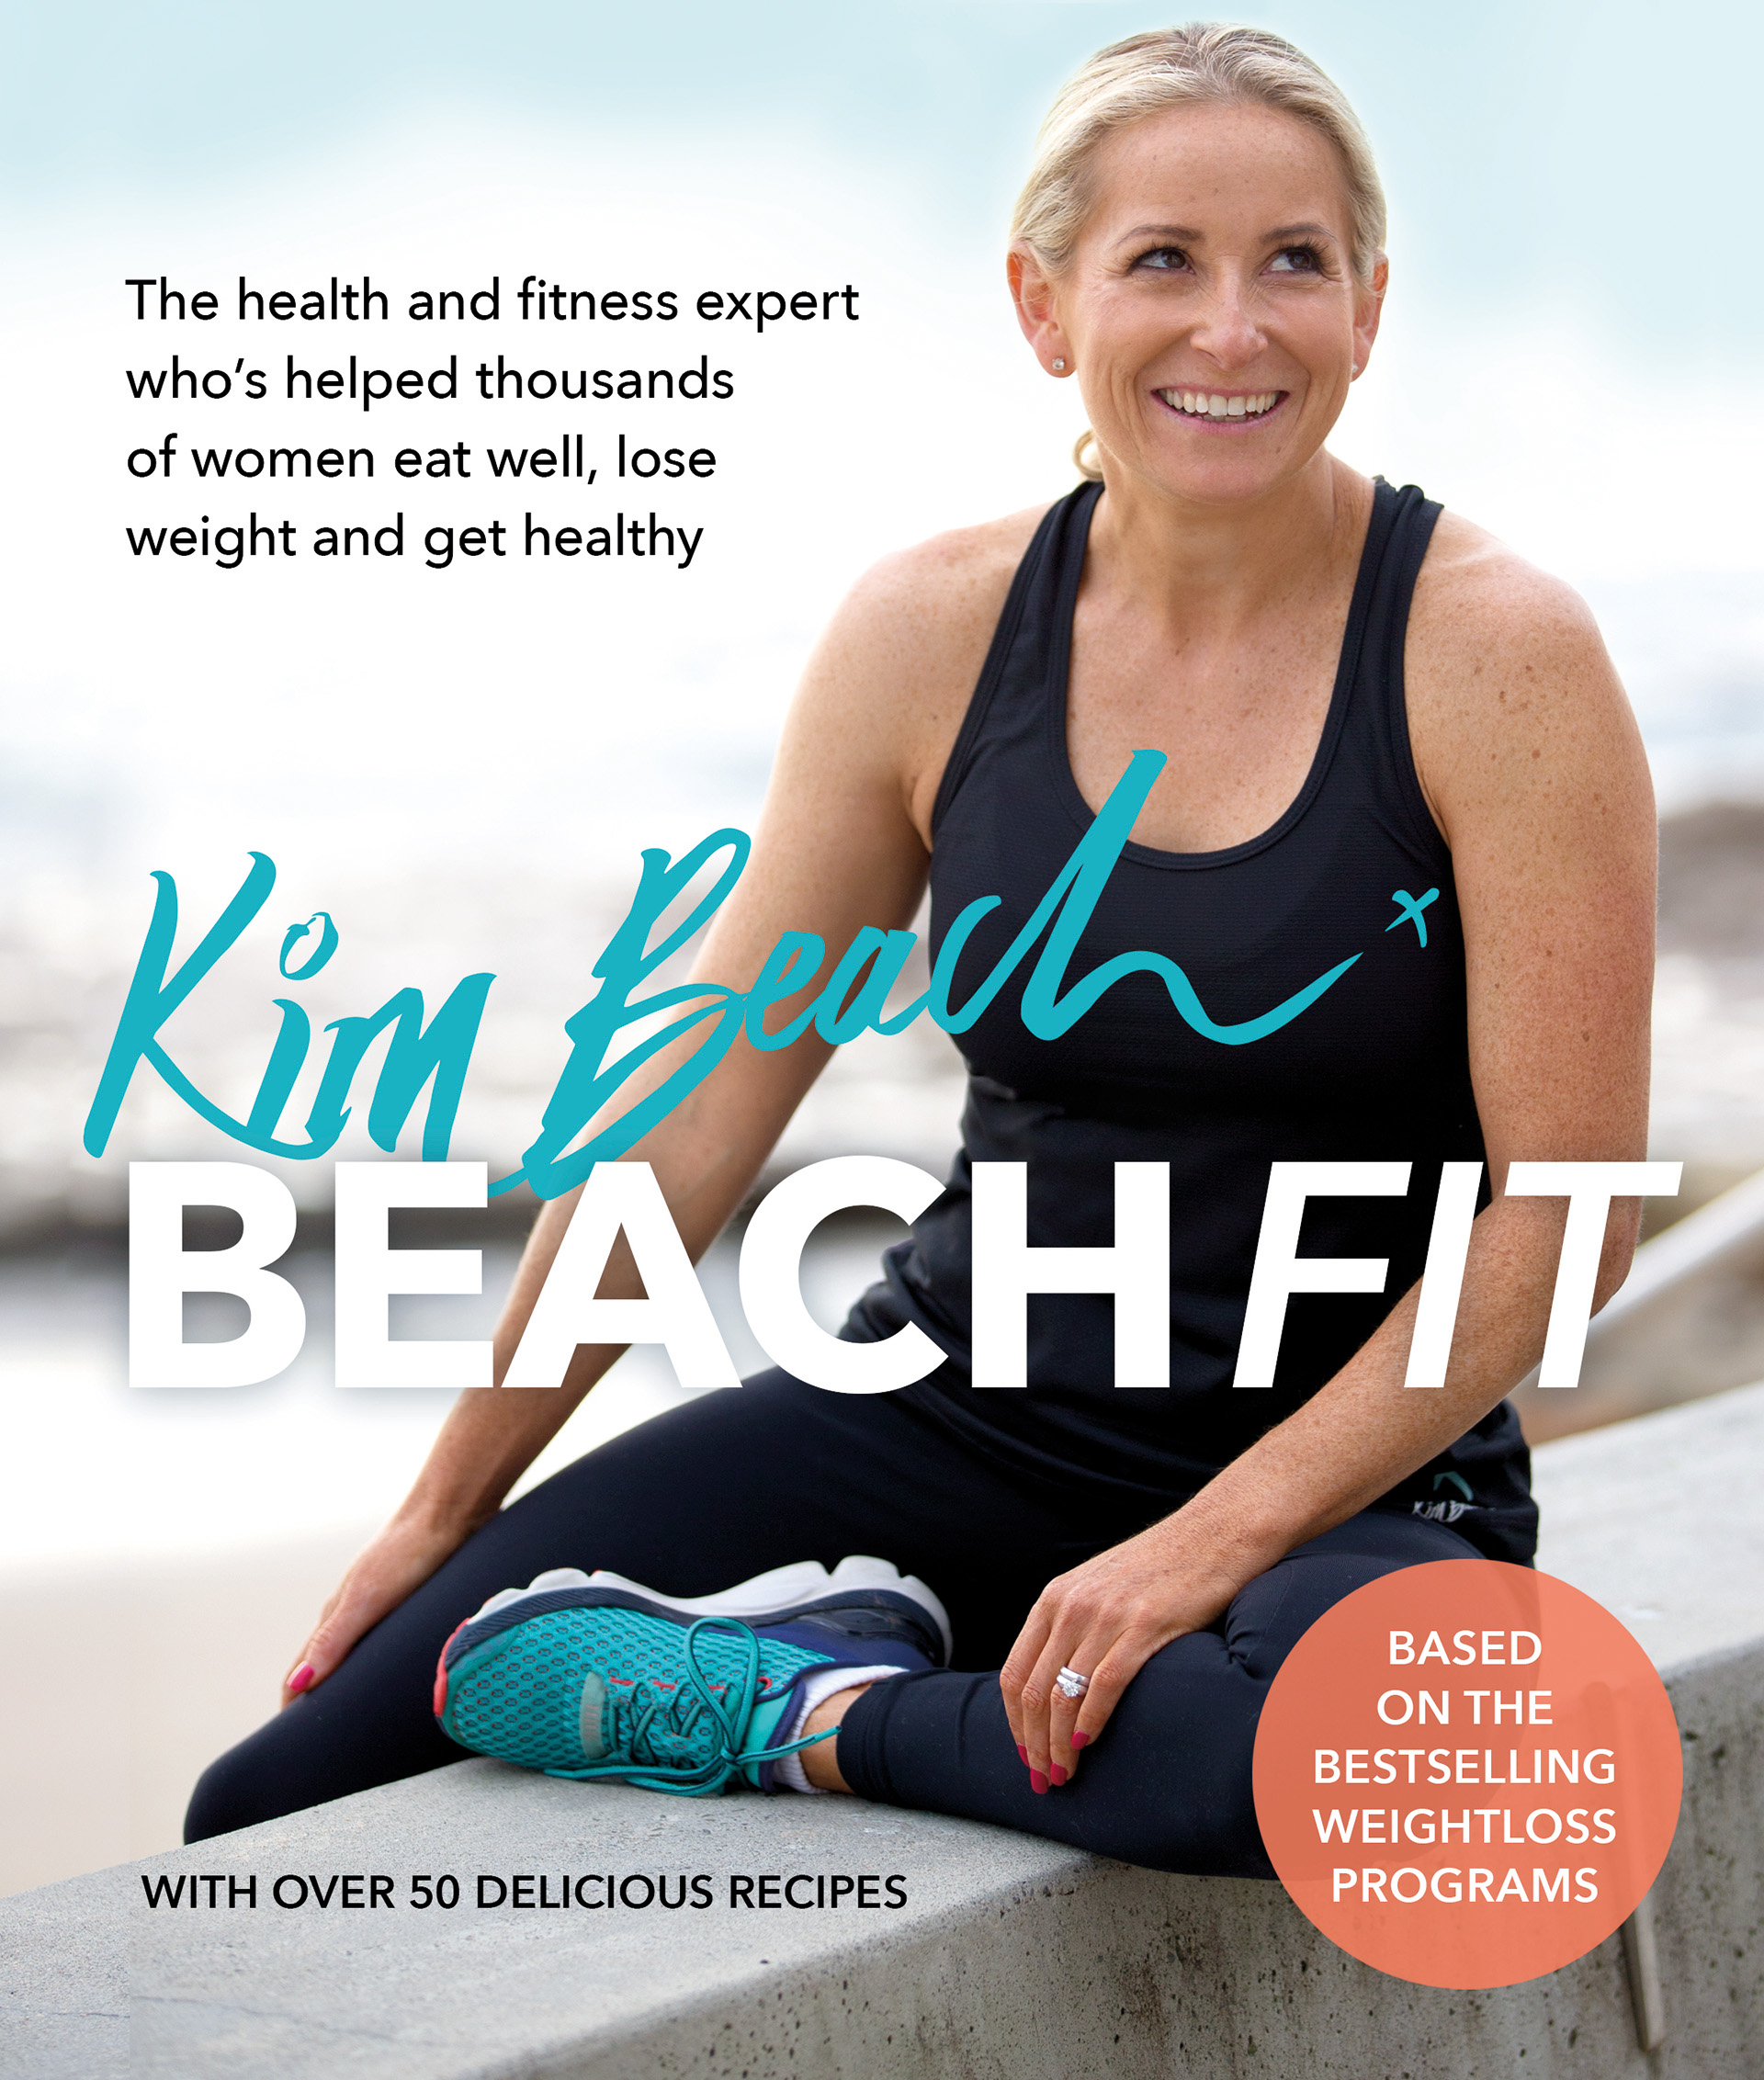 Beach Fit | Kim Beach